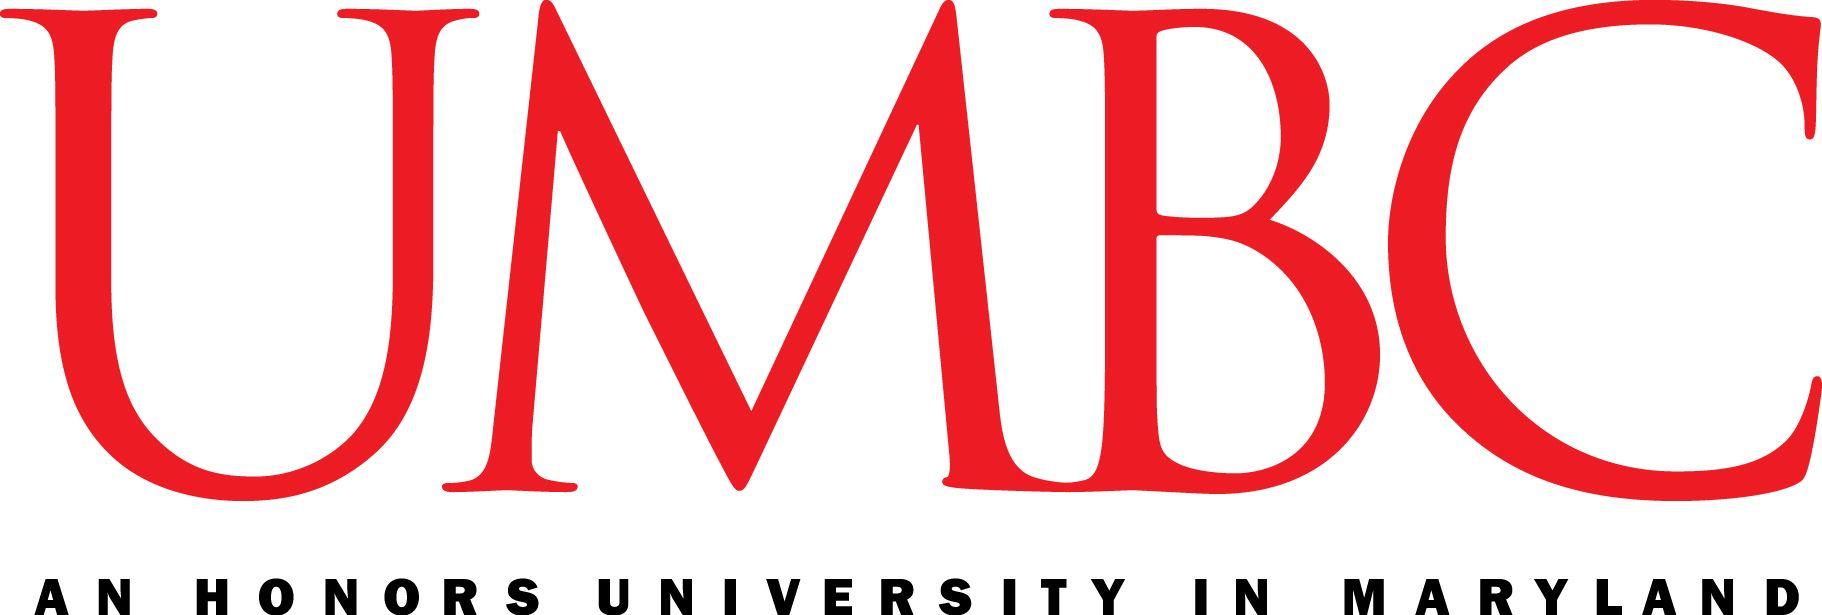 Maryland M Logo - Logos - UMBC Brand and Style Guide - UMBC